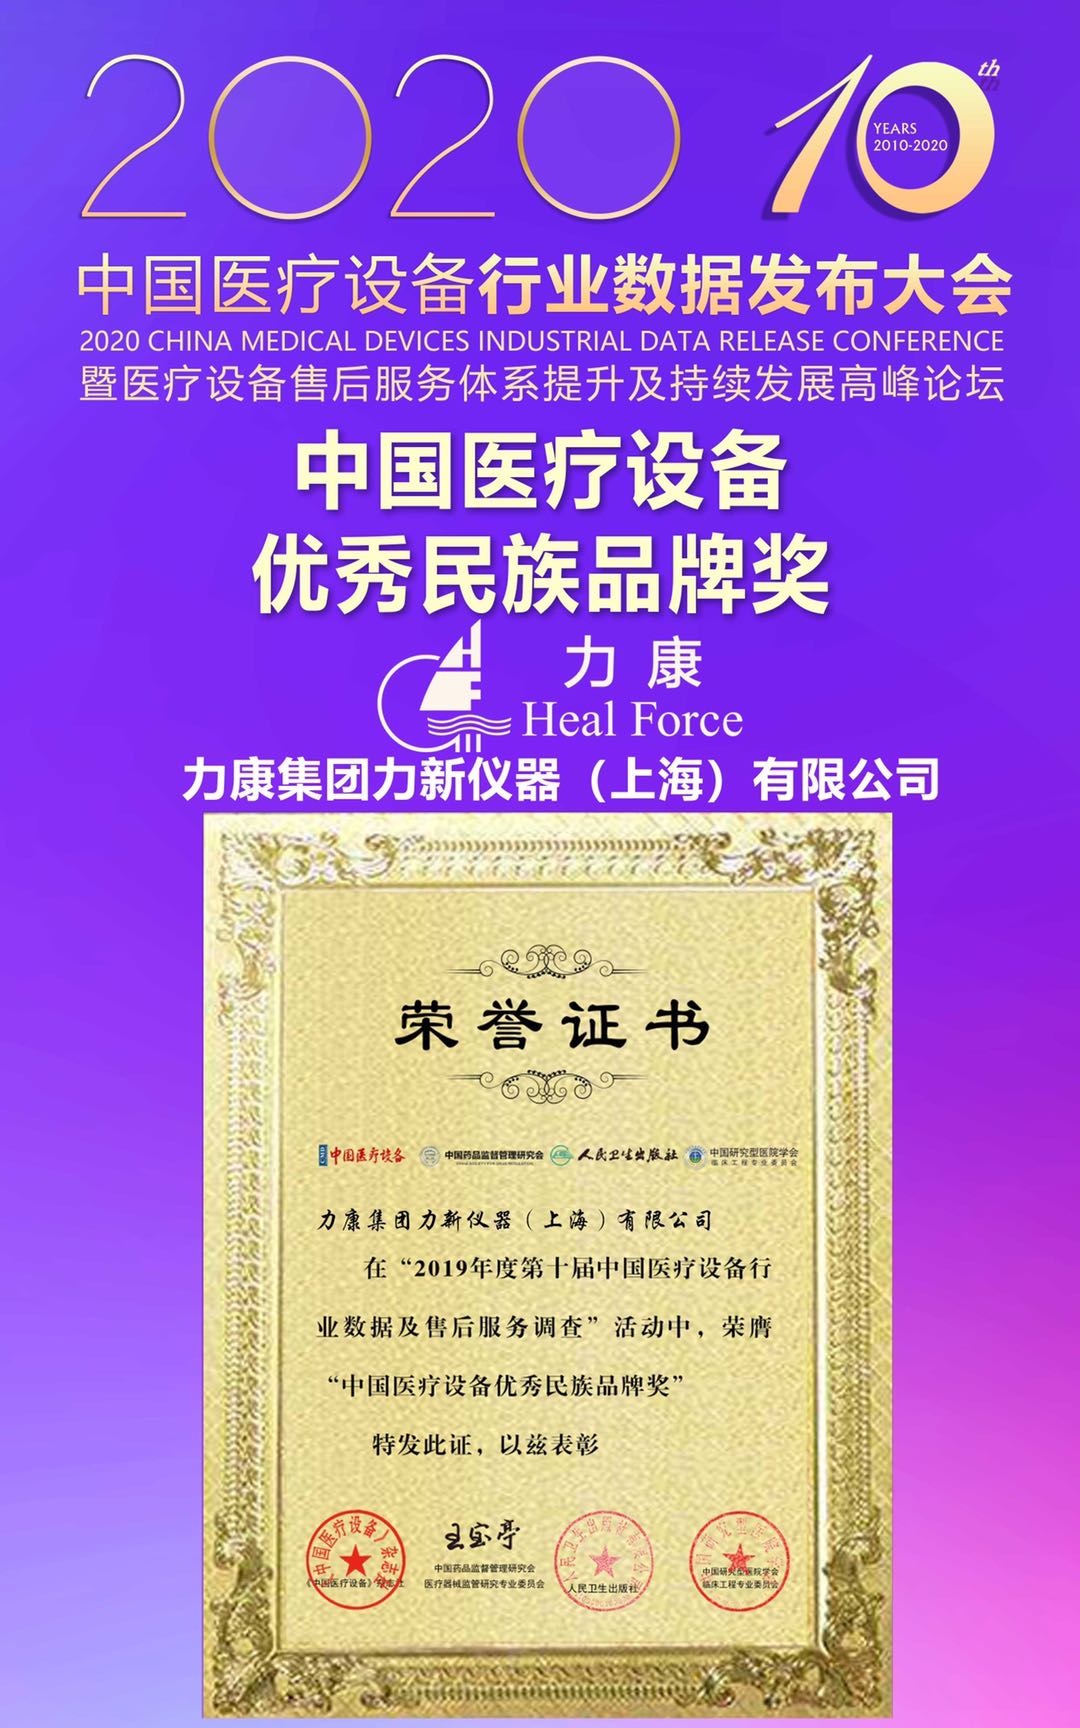 中國醫療設備優秀民族品牌獎